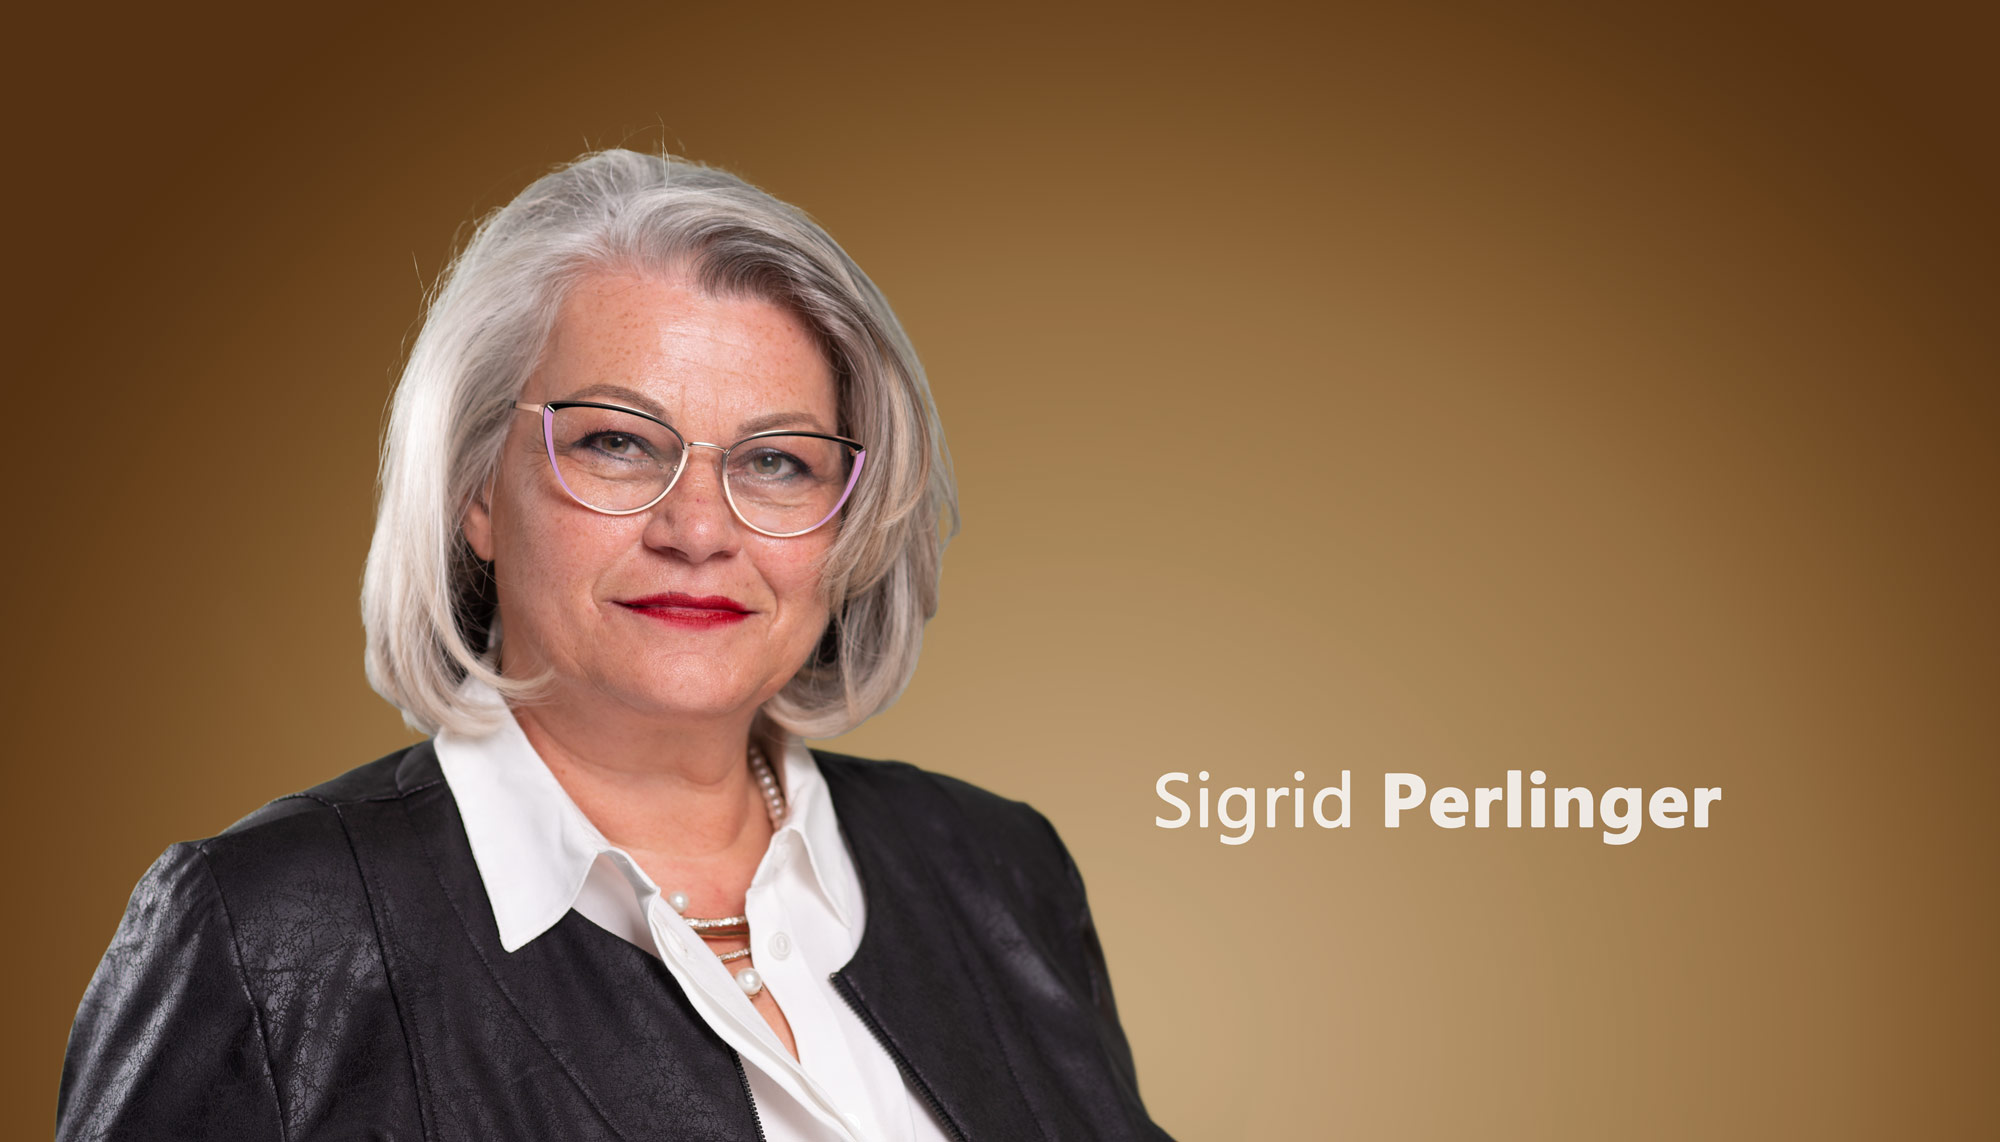 Sigrid Perlinger